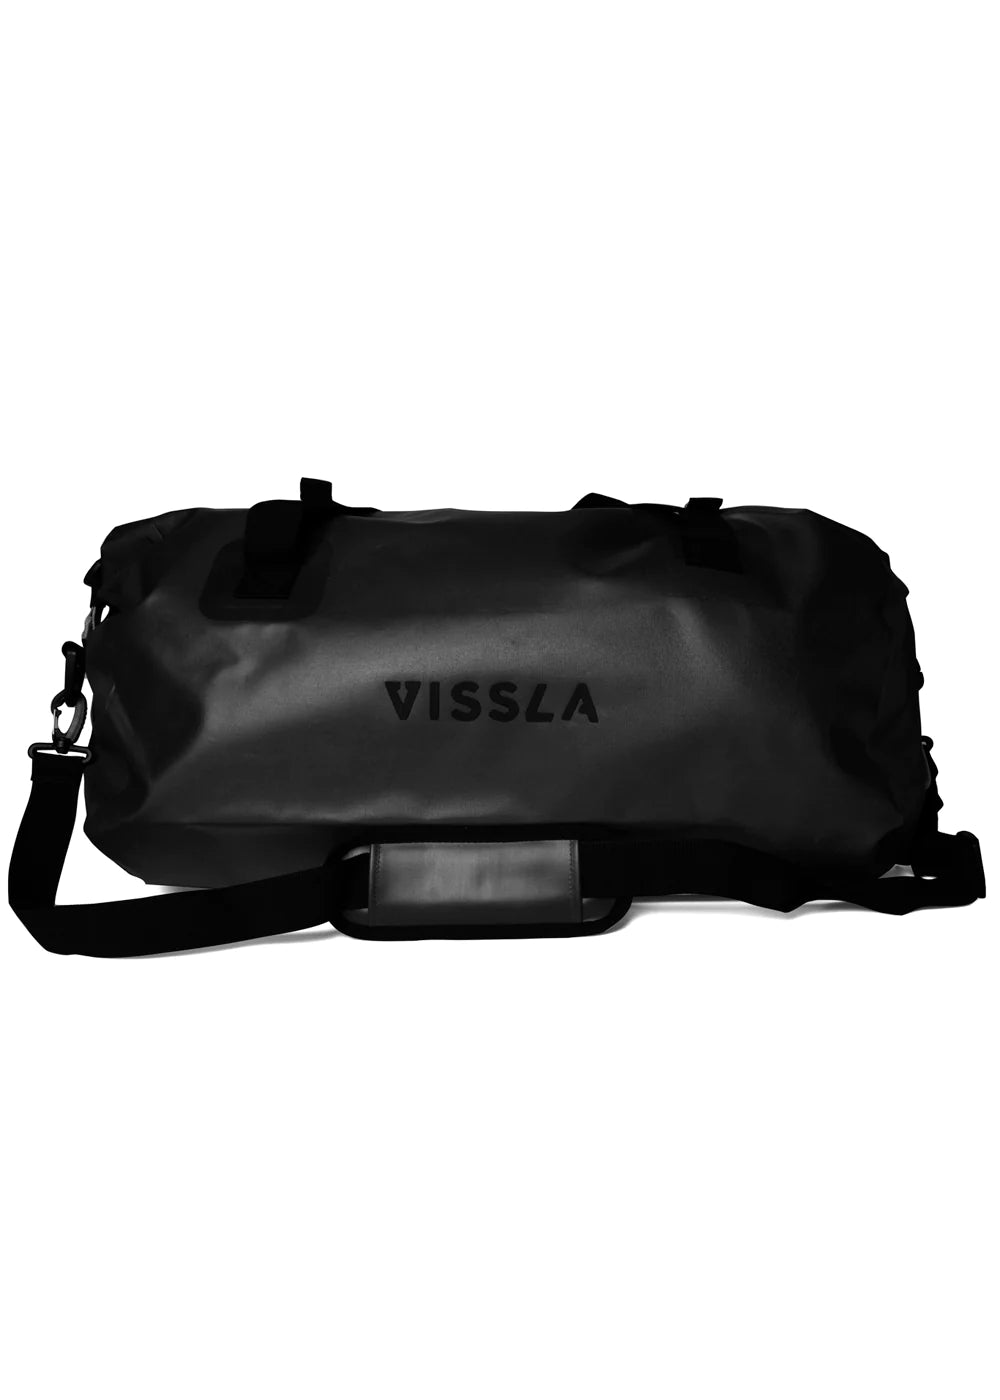 Vissla 7 Seas 40L Dry Duffle Bag - AST Bag